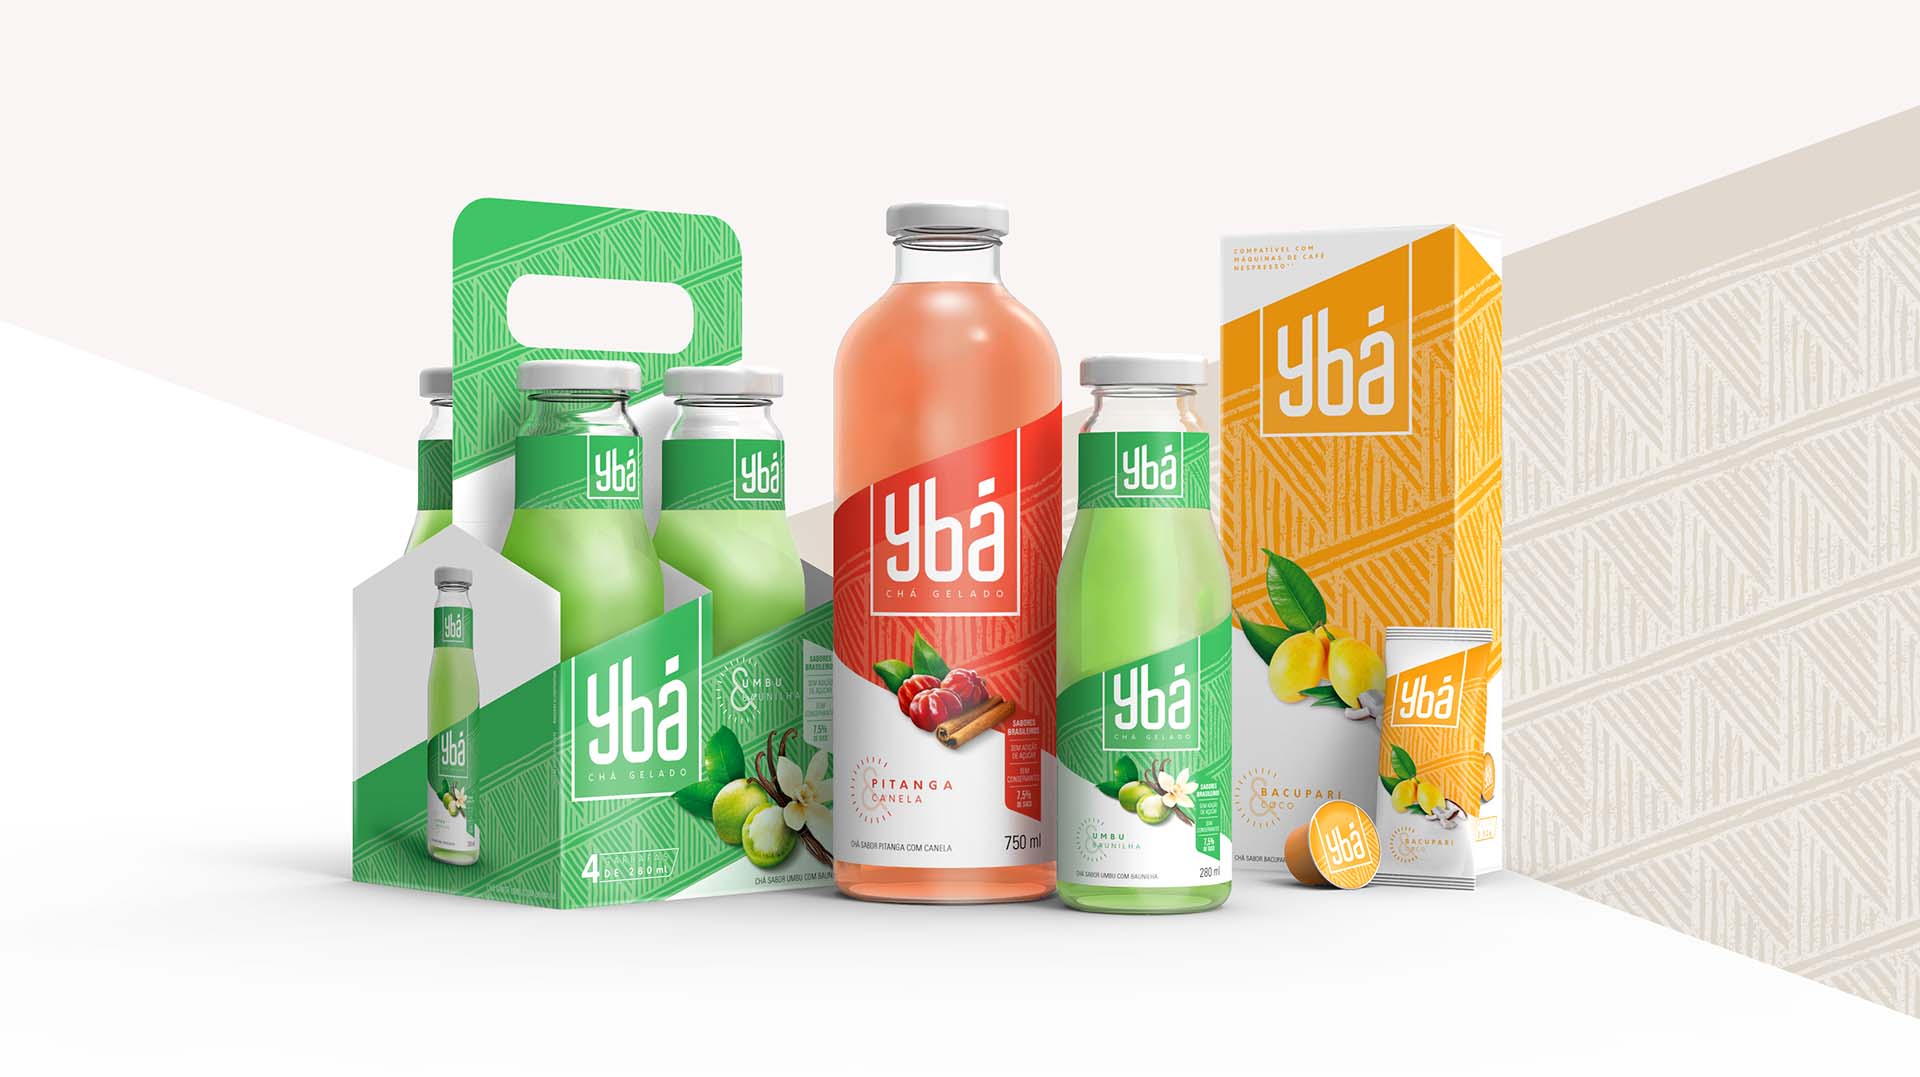 引用神话色彩和水果结合的Ybá冰茶饮料包装设计欣赏